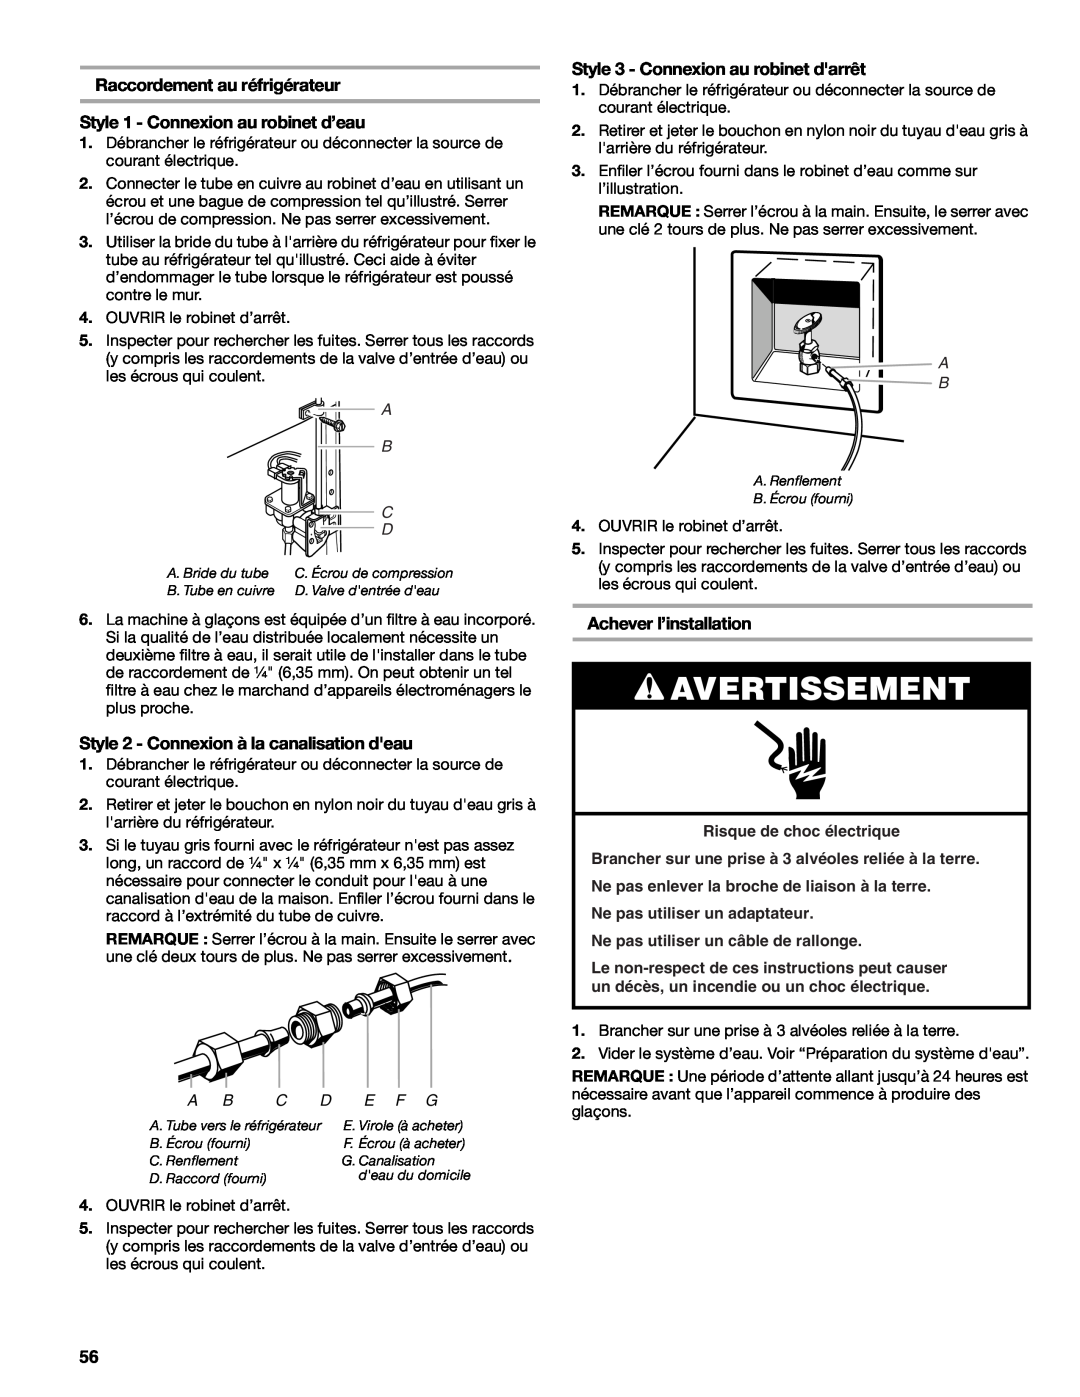 Sears T1KB2/T1RFKB2 manual Raccordement au réfrigérateur, Style 1 - Connexion au robinet d’eau, Achever l’installation 